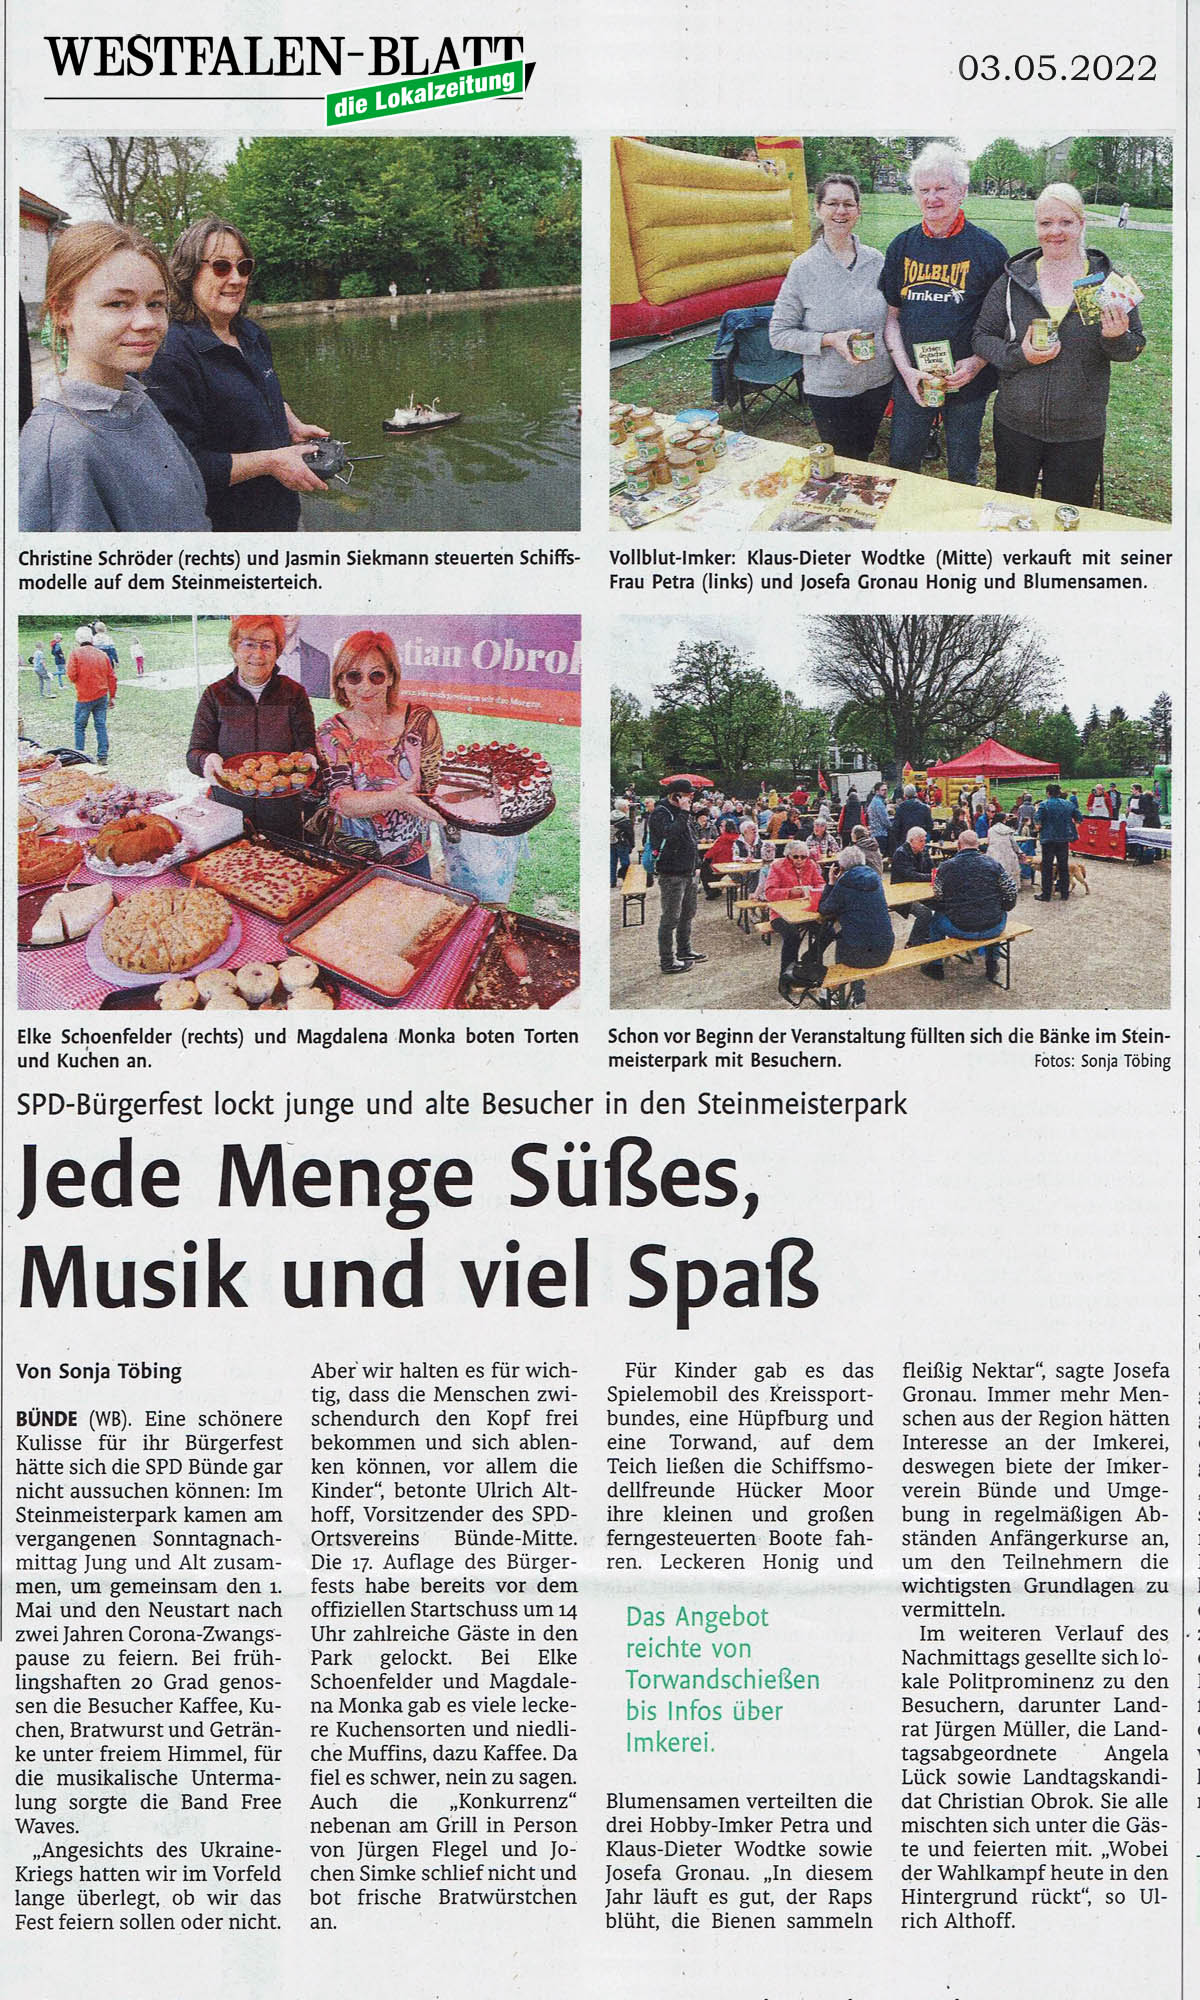 01.Mai 2022  Bürgerfest in Bünde